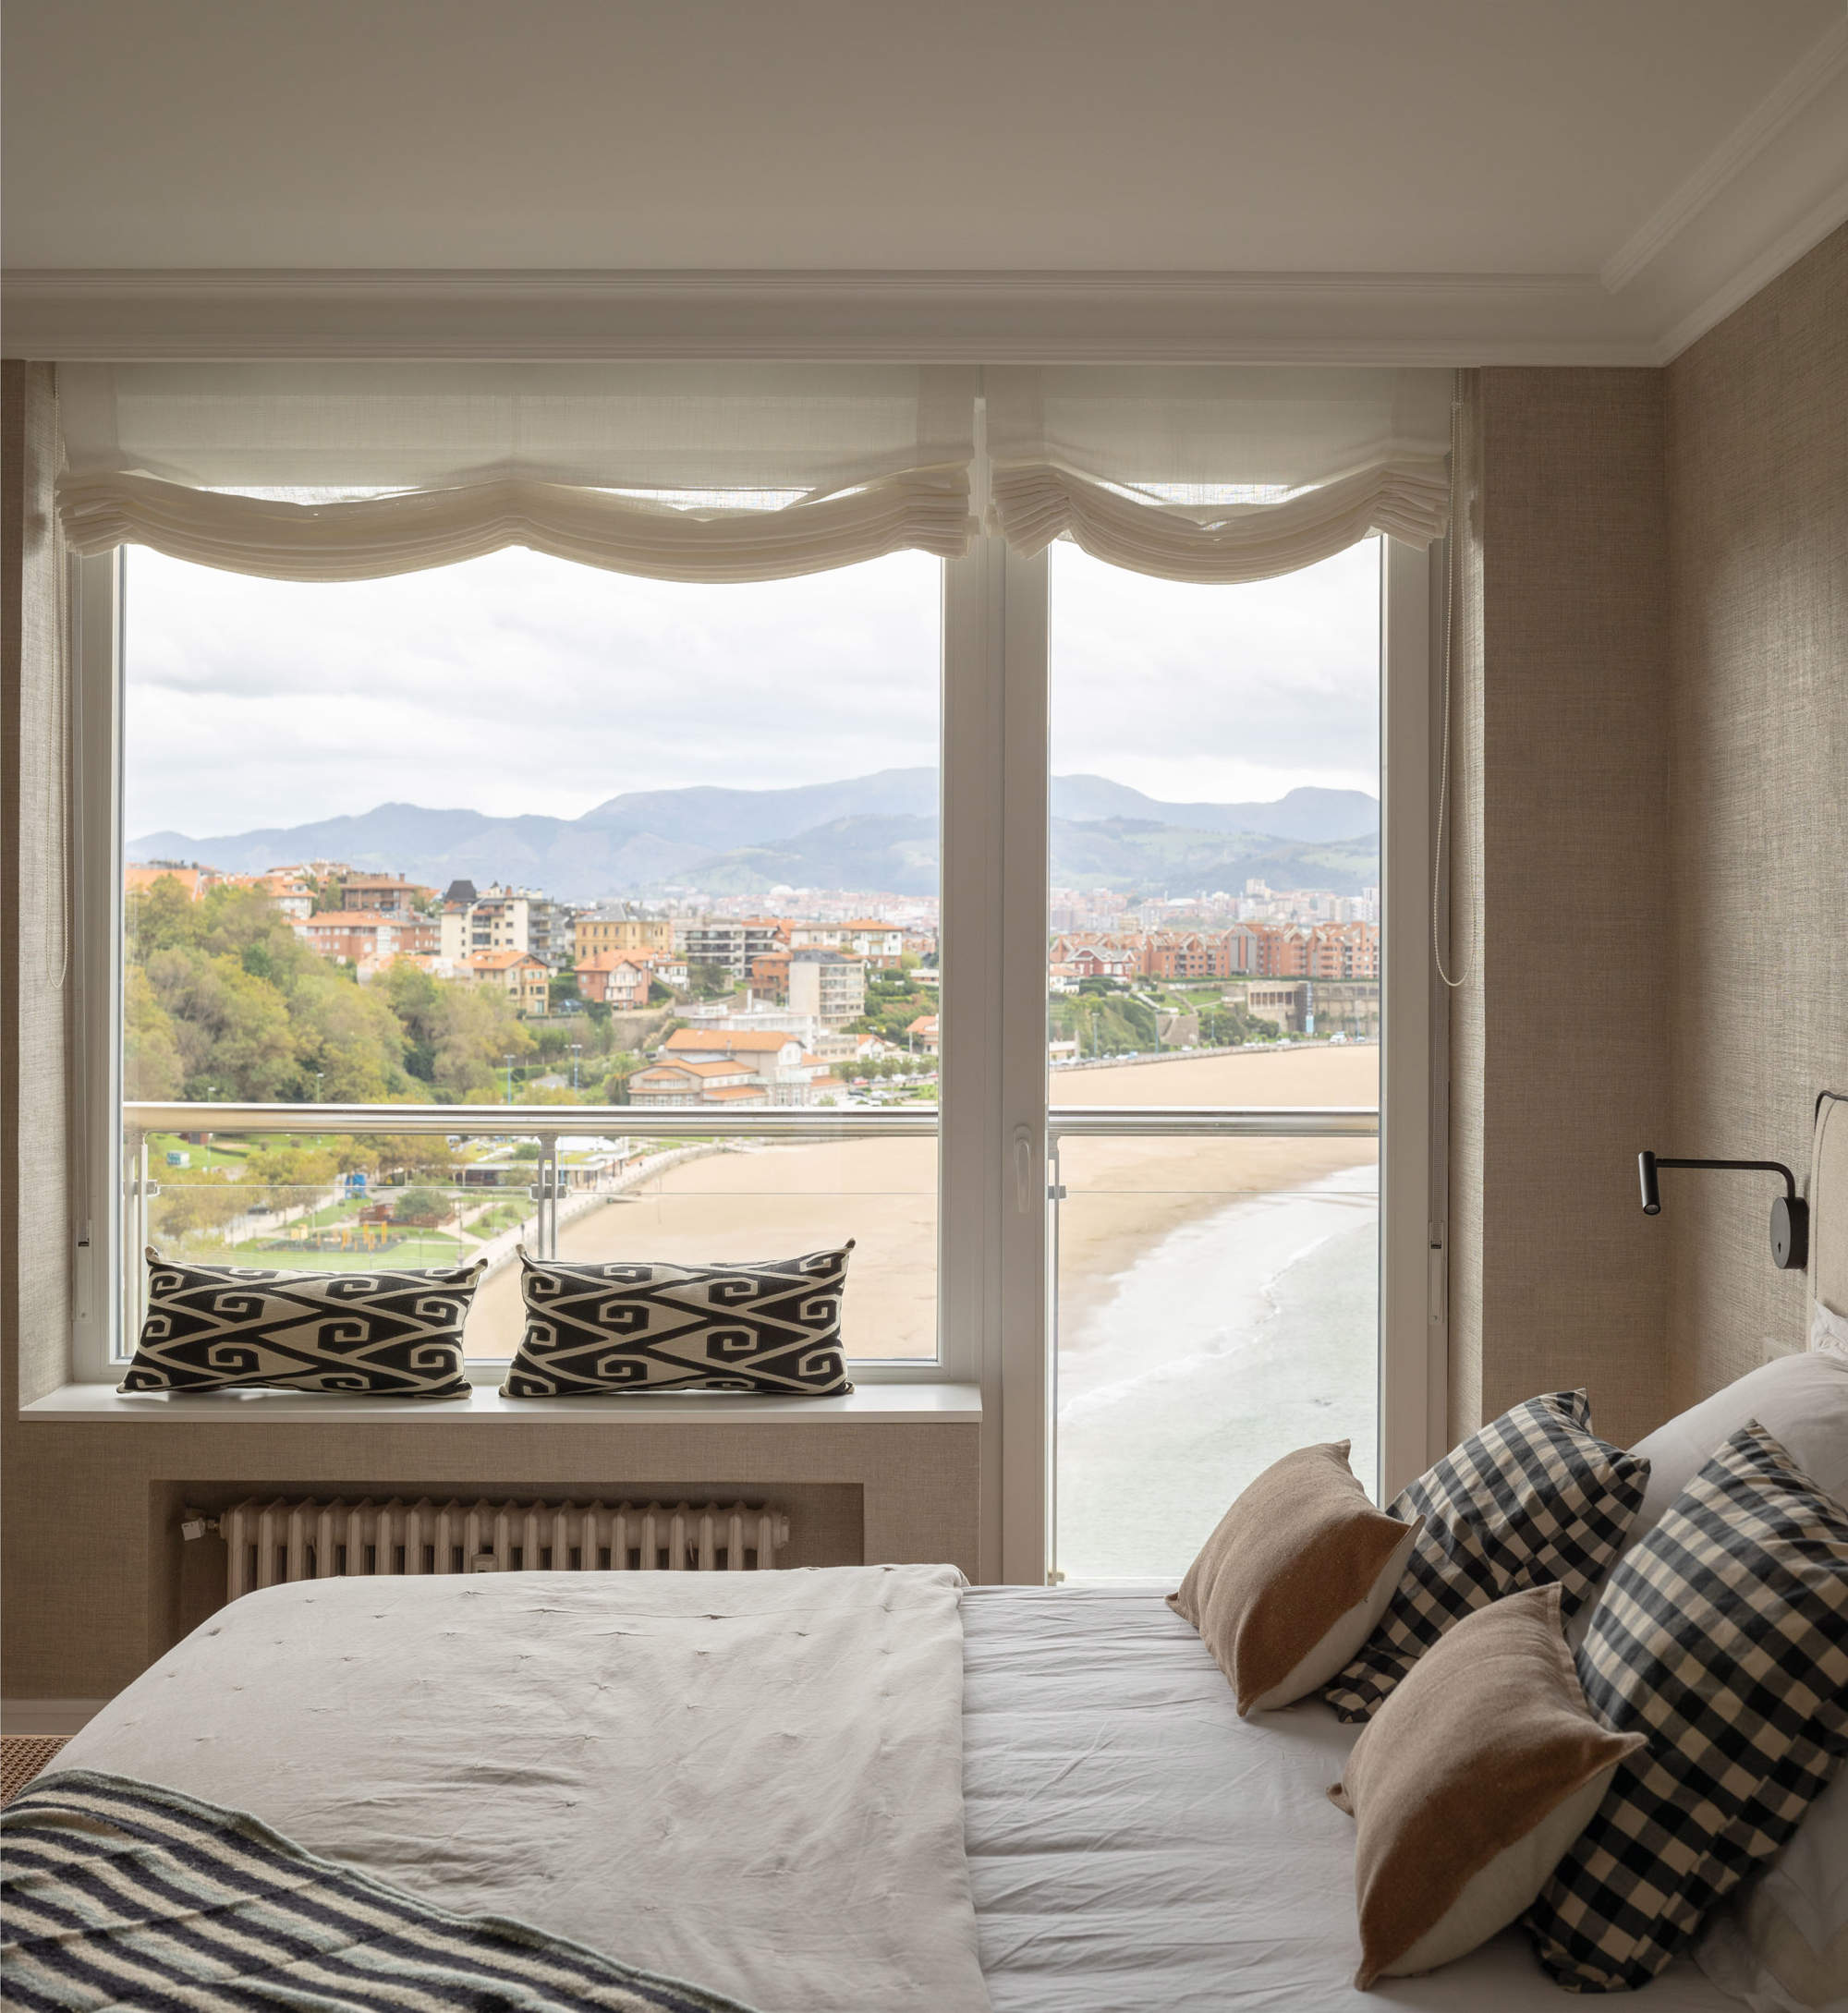 Un dormitorio acogedor con vistas al mar.